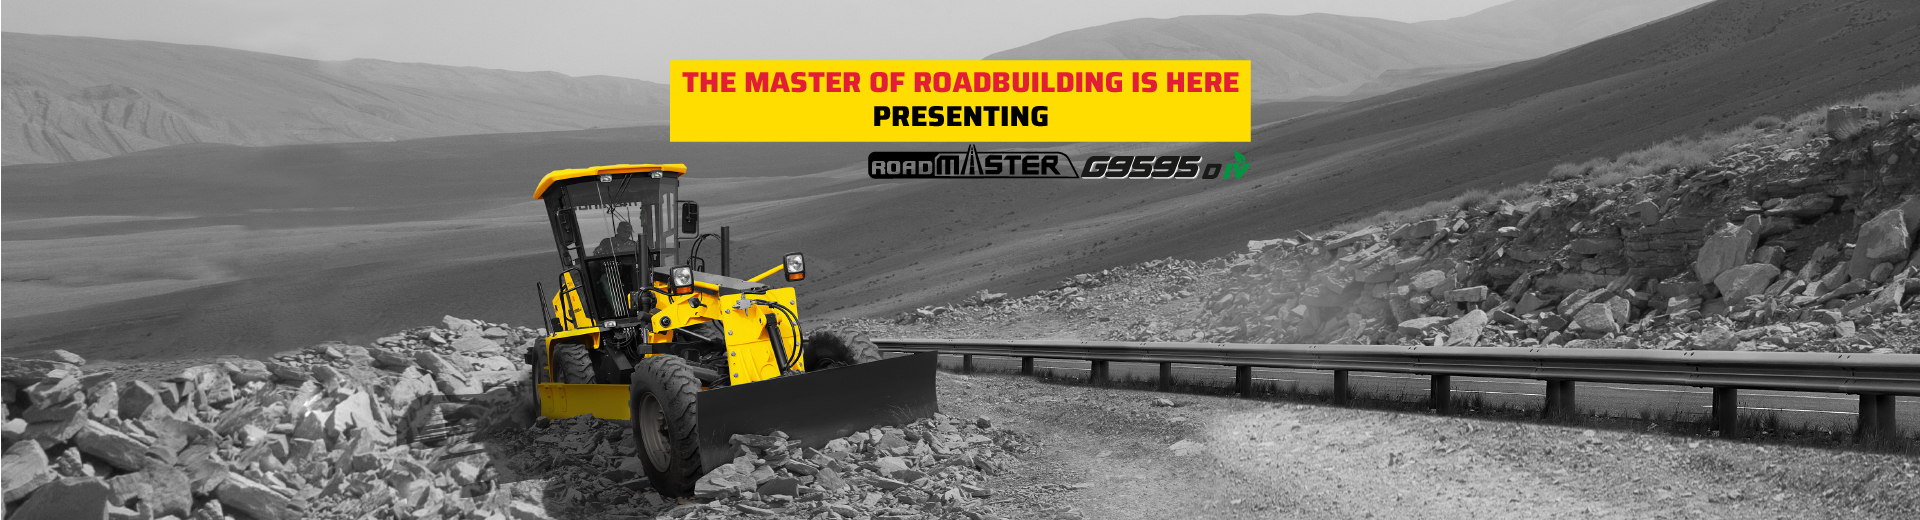 Mahindra Roadmaster G9595 